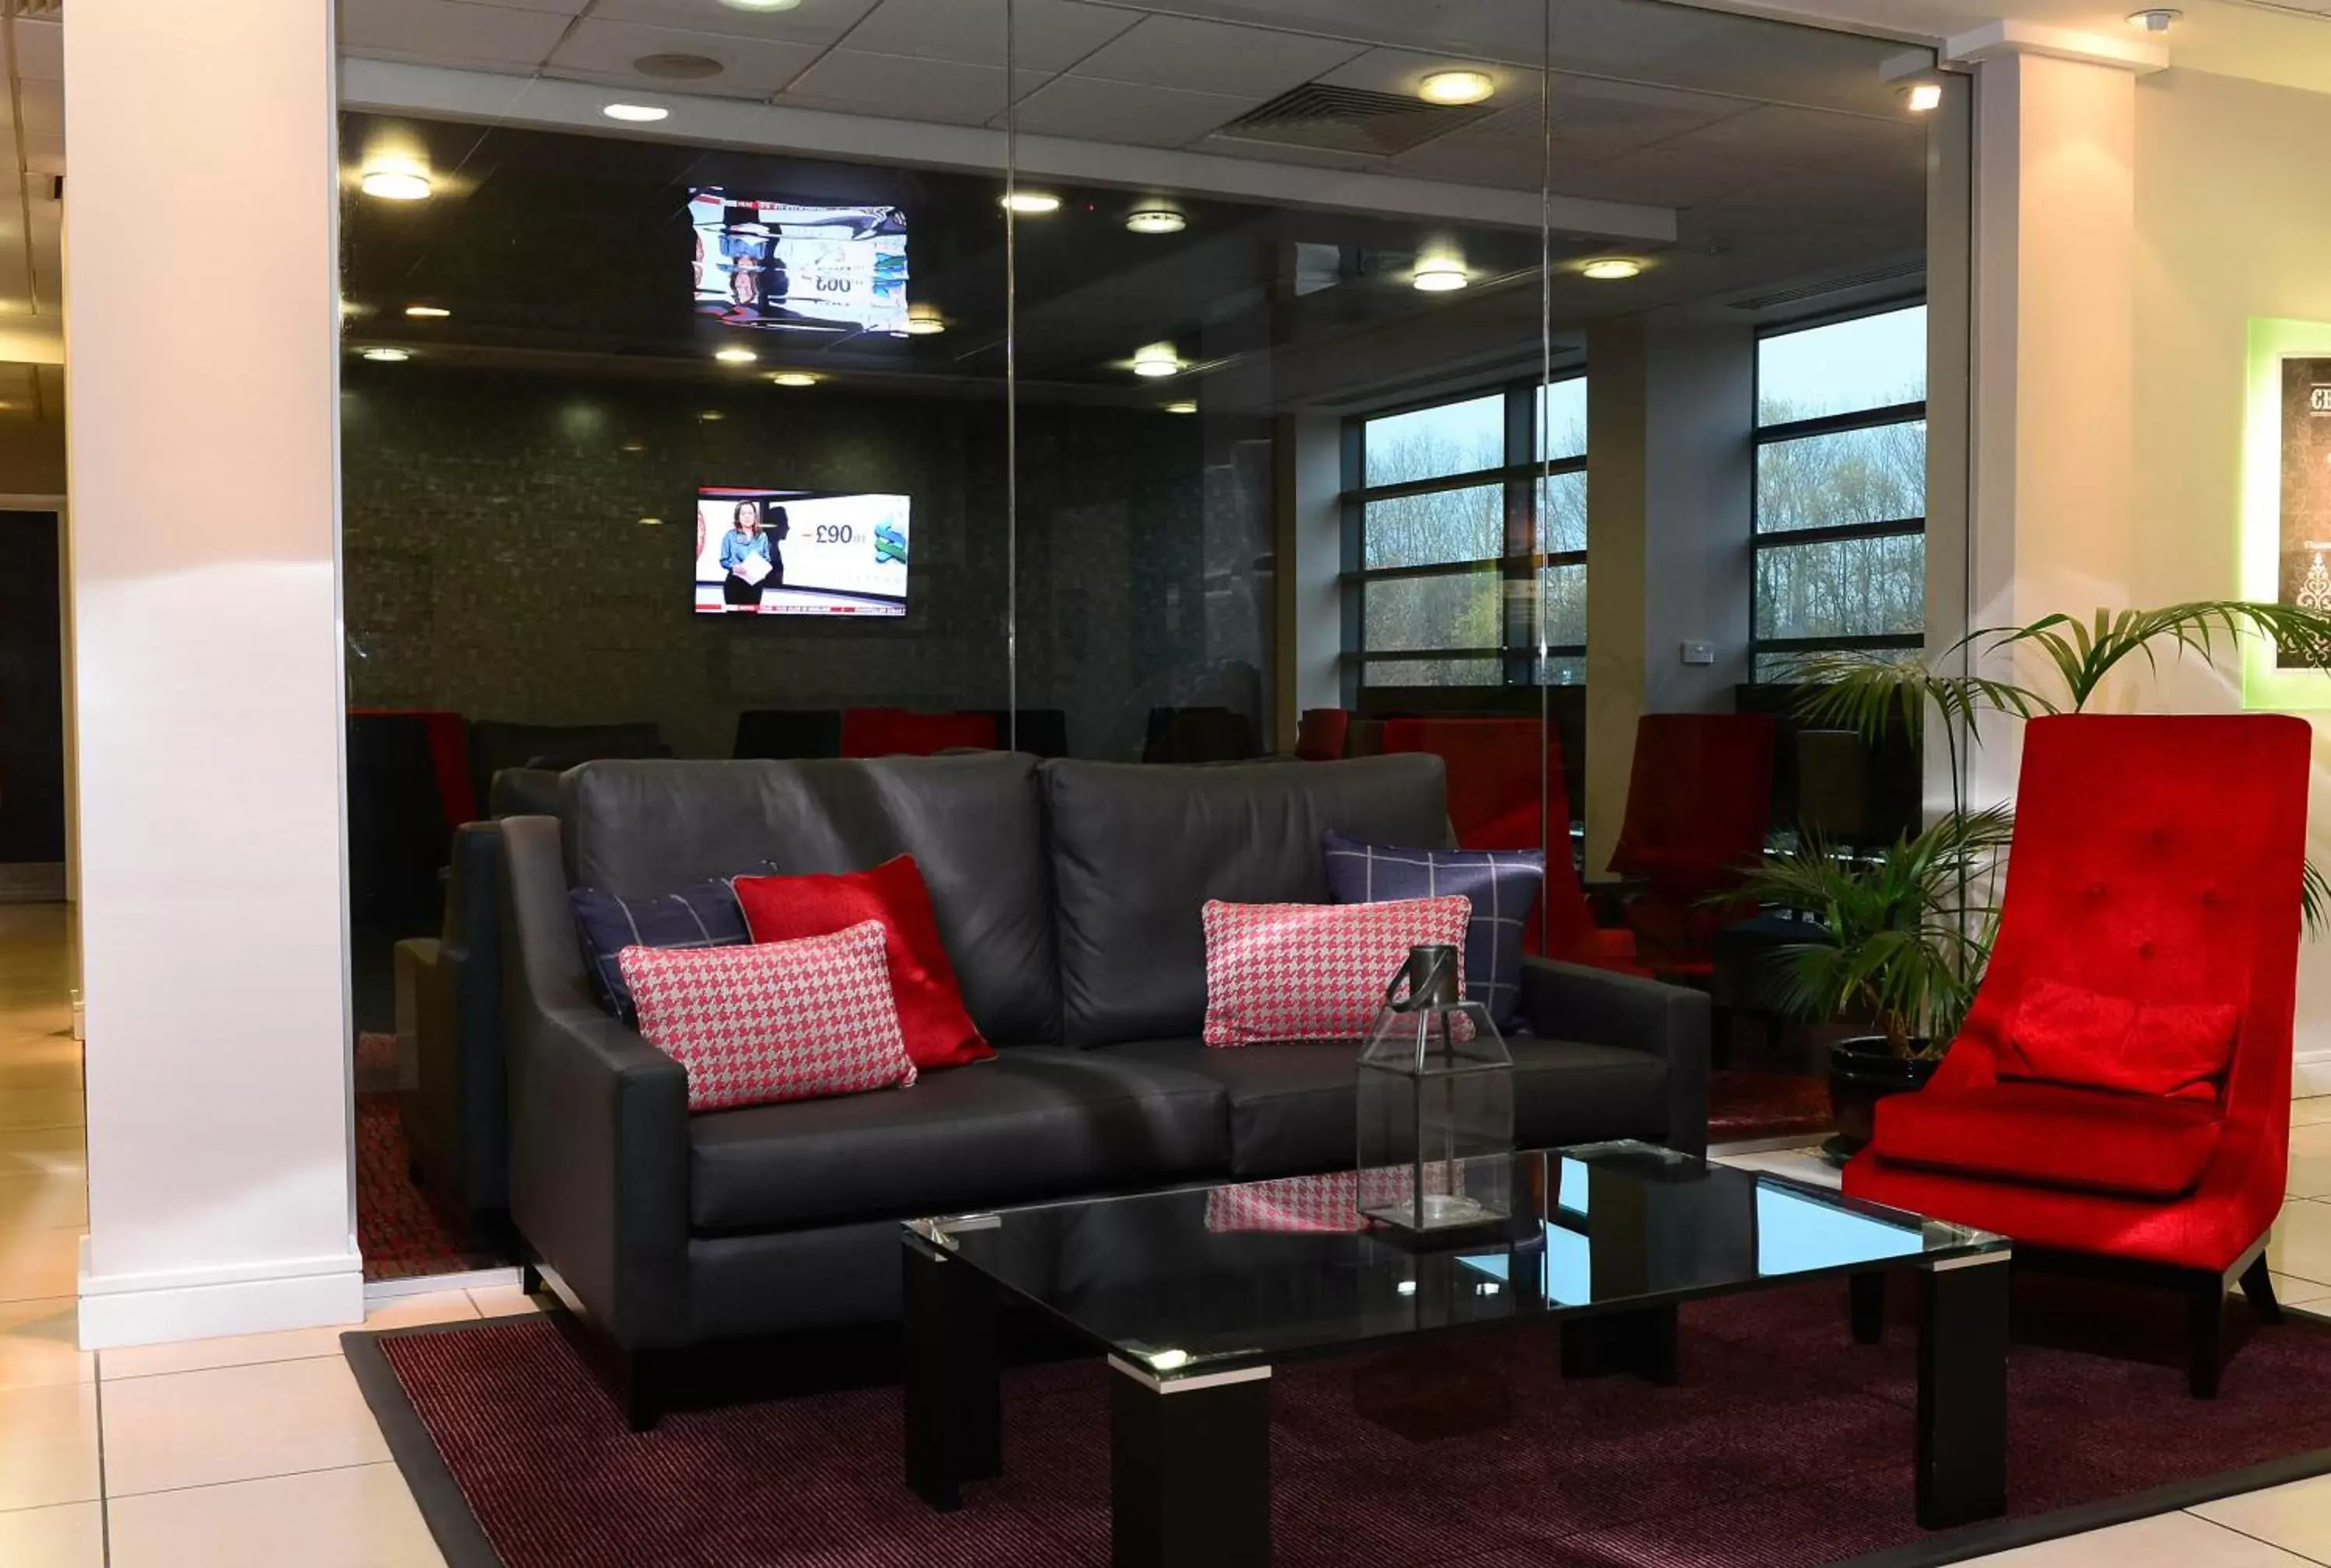 Lobby or reception, Lounge/Bar in International Hotel Telford